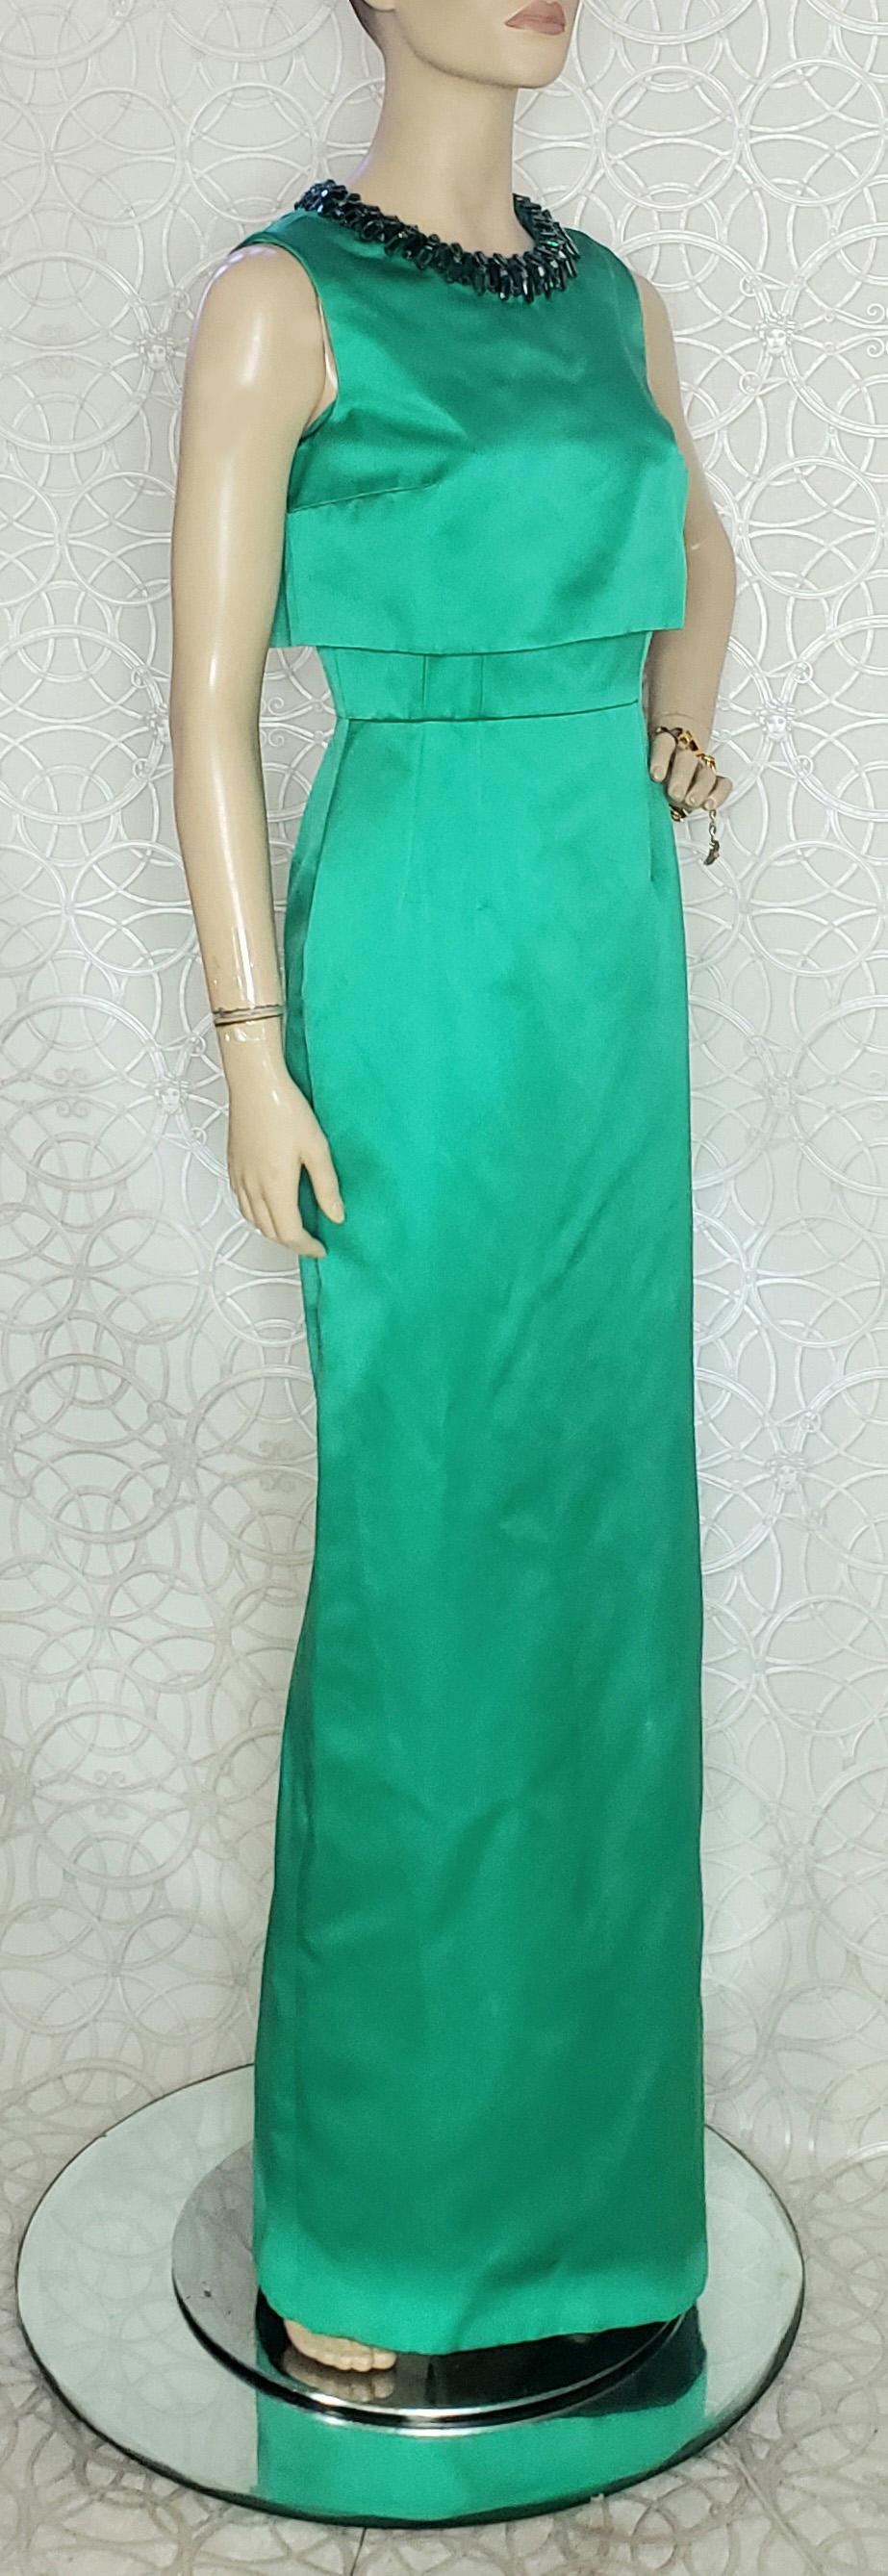 Alexander McQueen 

Emerald green glass beaded long dress

Content: 100% silk
Back zipper
Sleeveless
Back slit

Size 40 - 4 (S)

Length 63